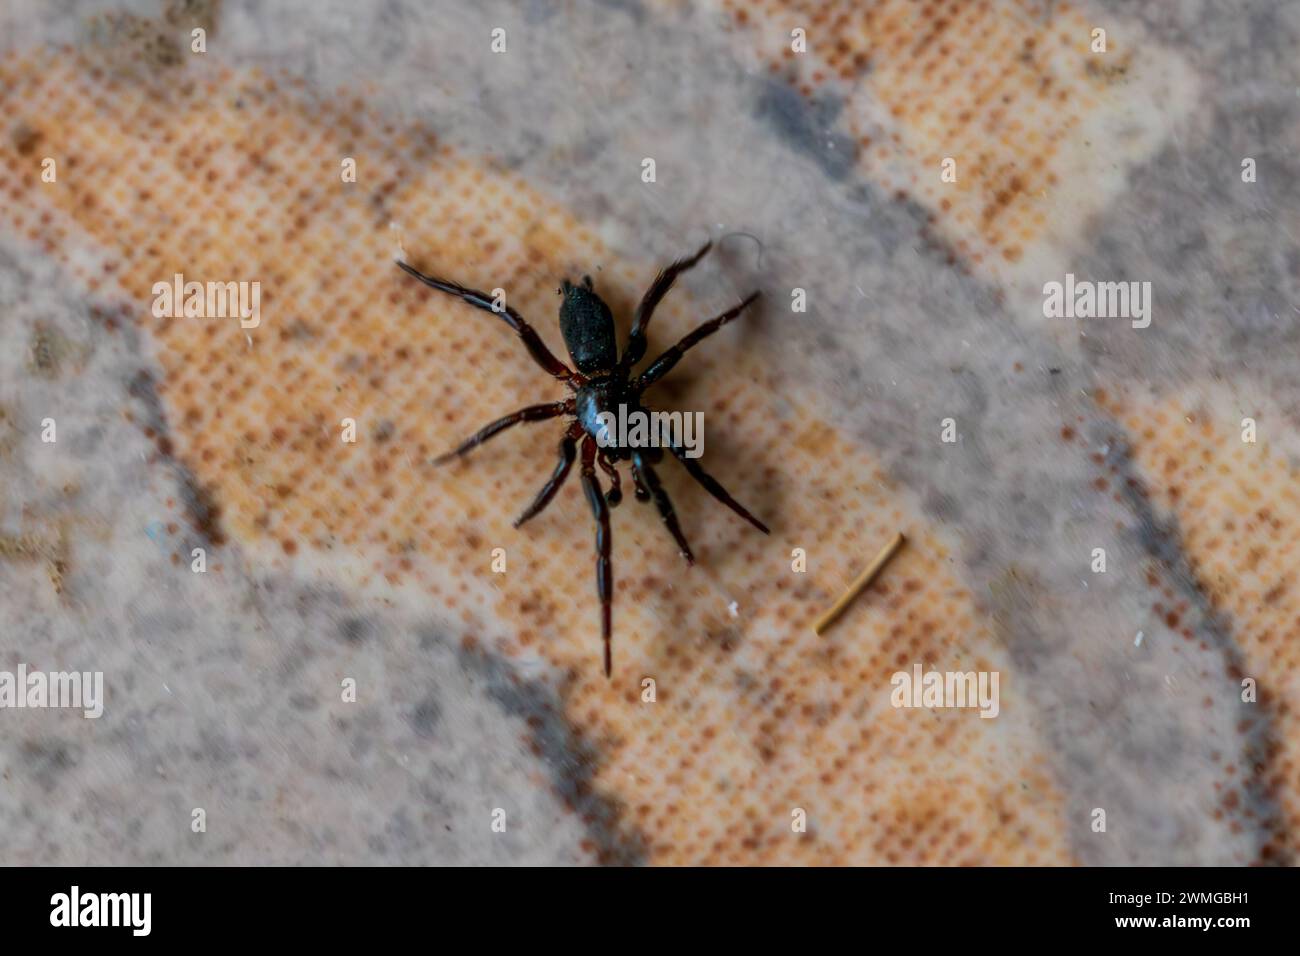 Zelotinae, Ground Spider Stock Photo